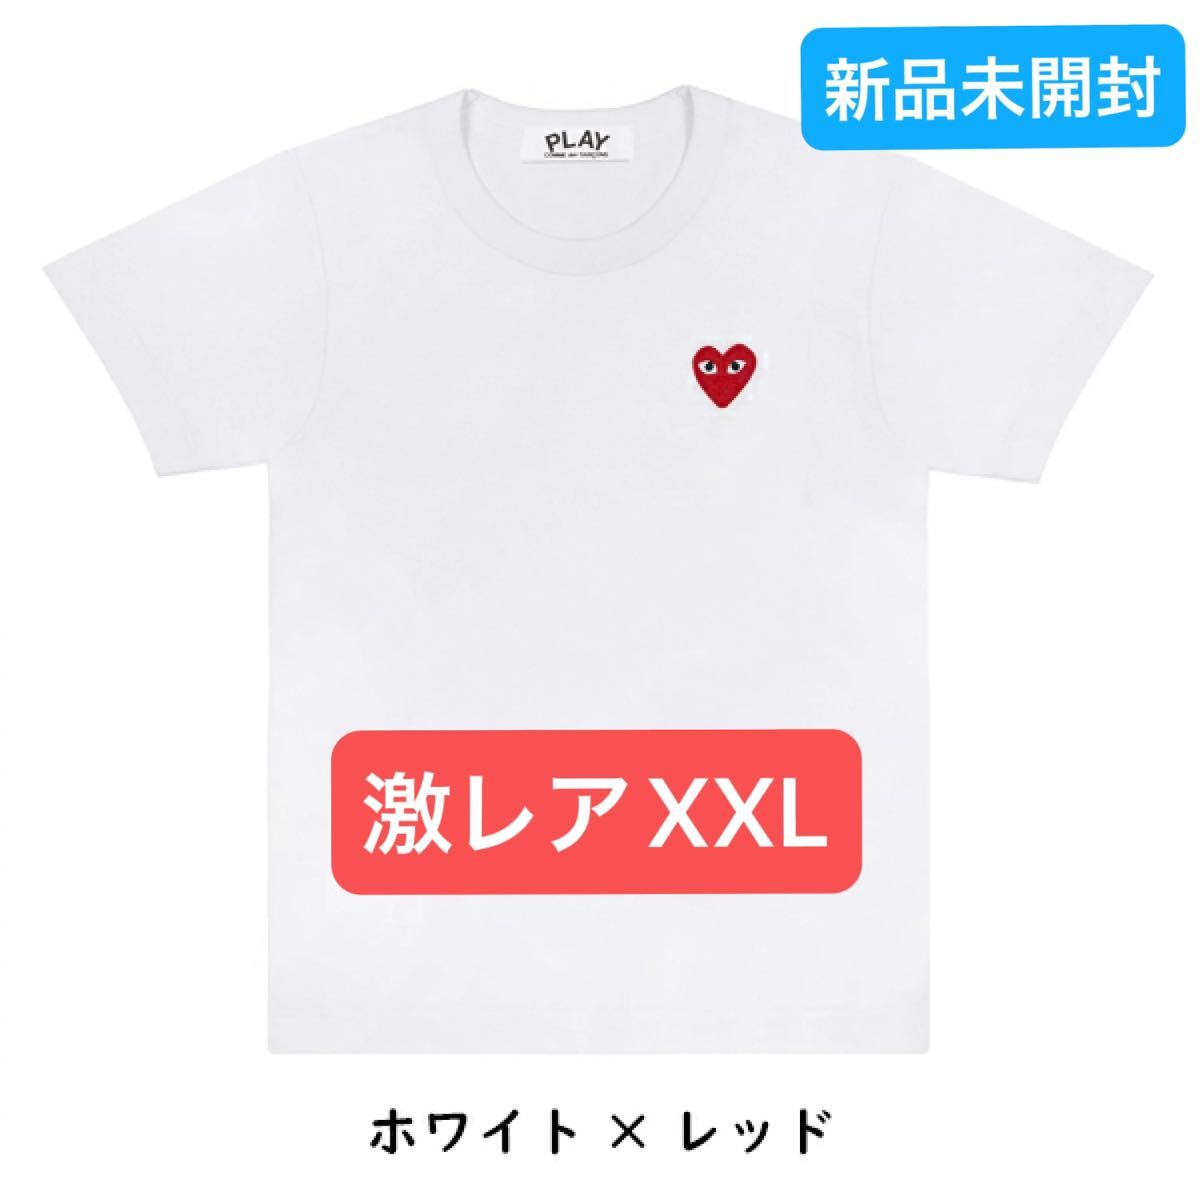 【希少XXL】プレイコムデギャルソン☆ハート刺繍ロゴ入りTシャツ希少XXL